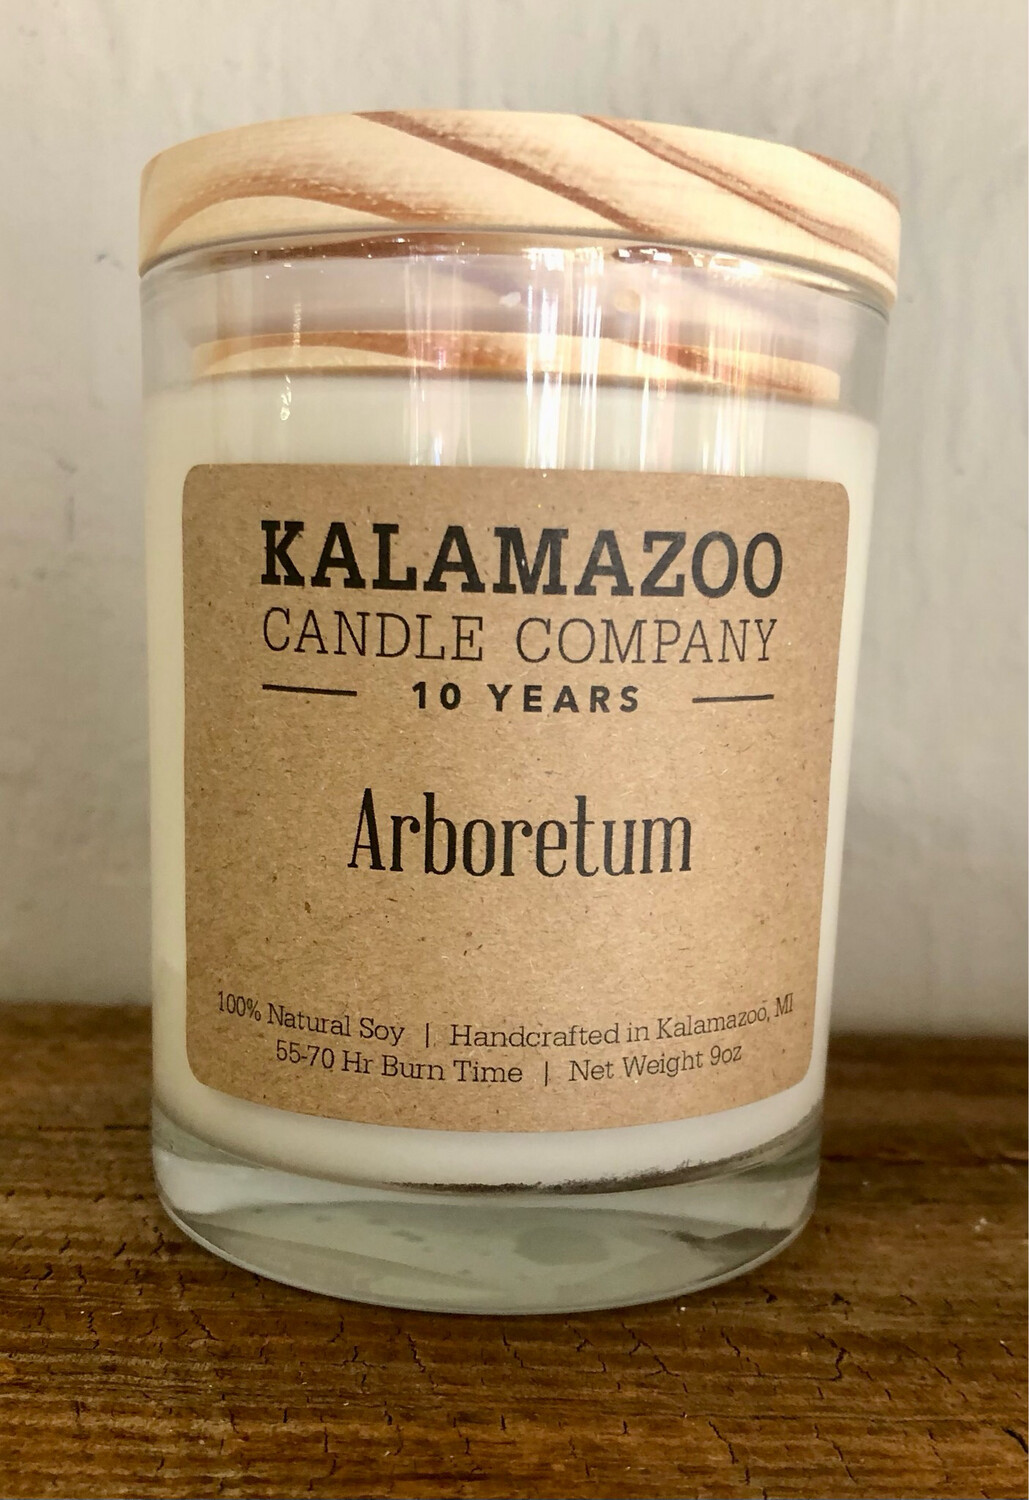 Kalamazoo Arboretum Candle 9 oz. Jar